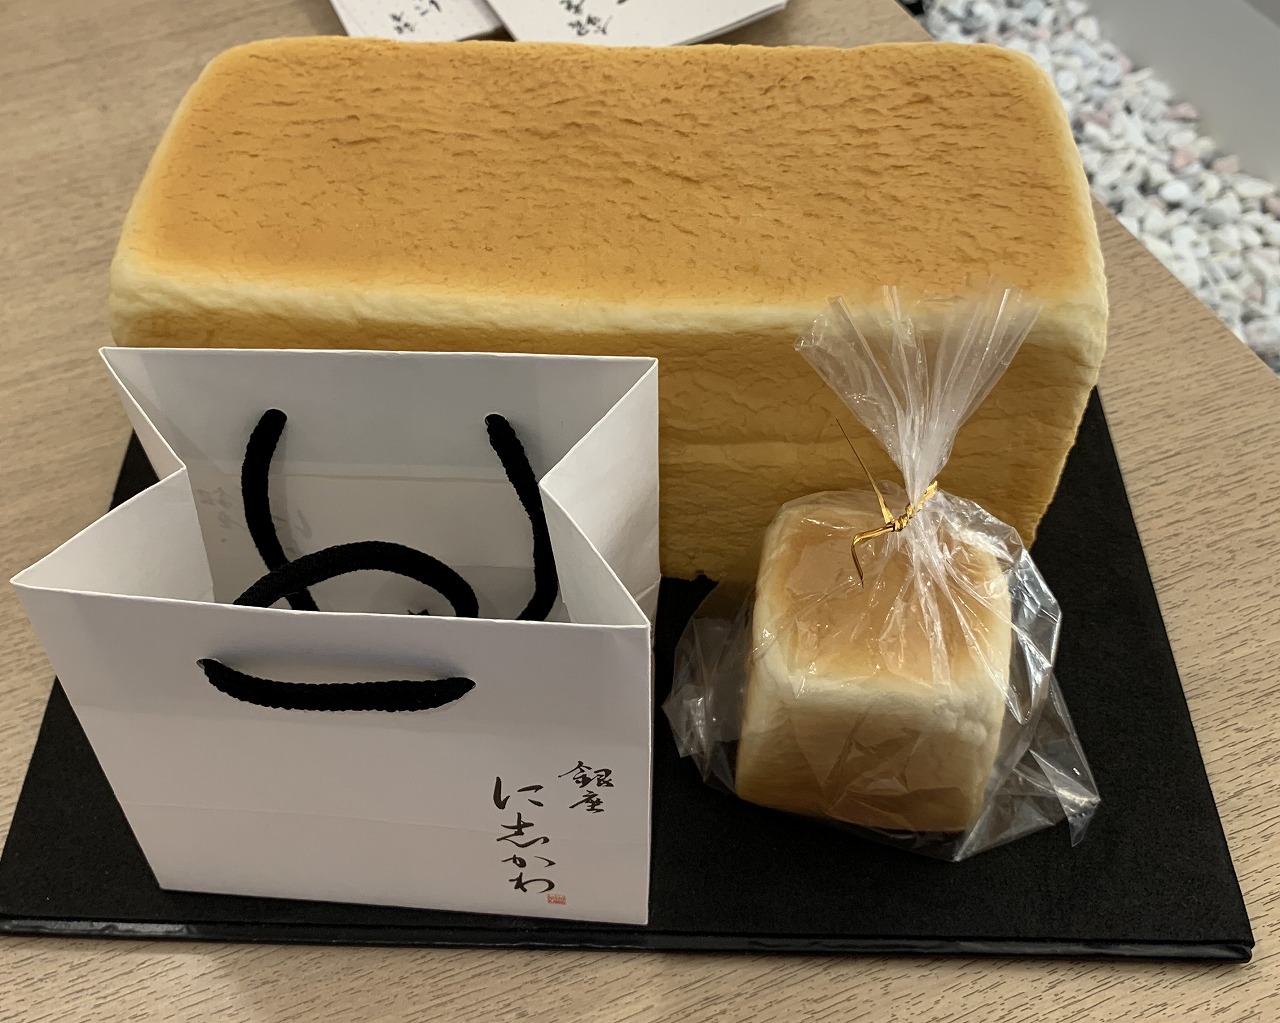 食パン専門店「銀座に志かわ 神戸六甲道店」